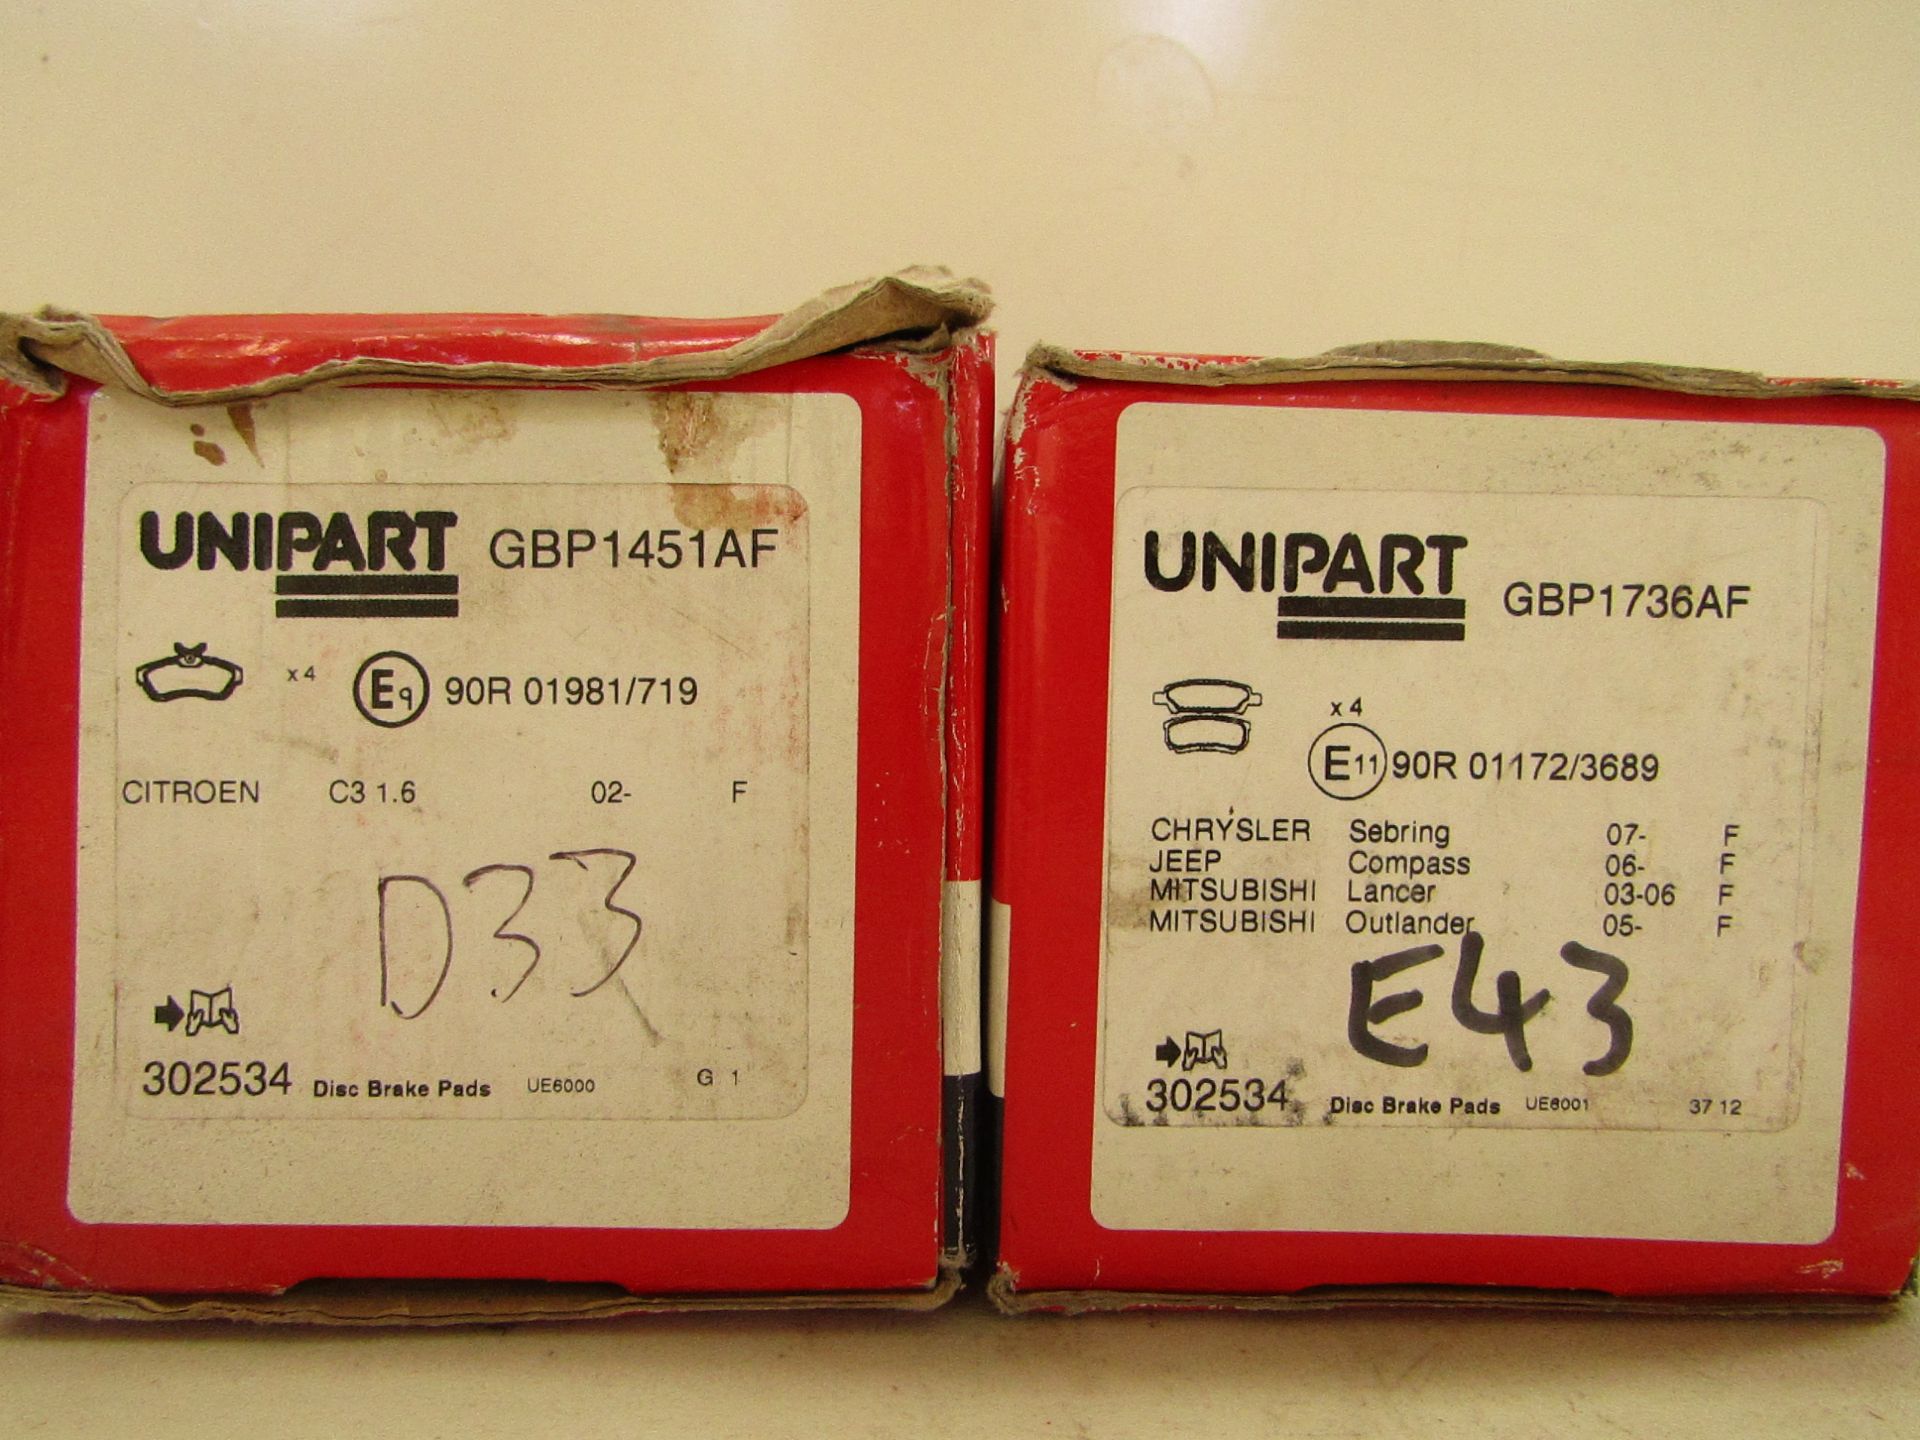 Unipart GBP1451AF set of 4 brake discs for Citroen C3 and GBP1736AF set of 4 brake discs for